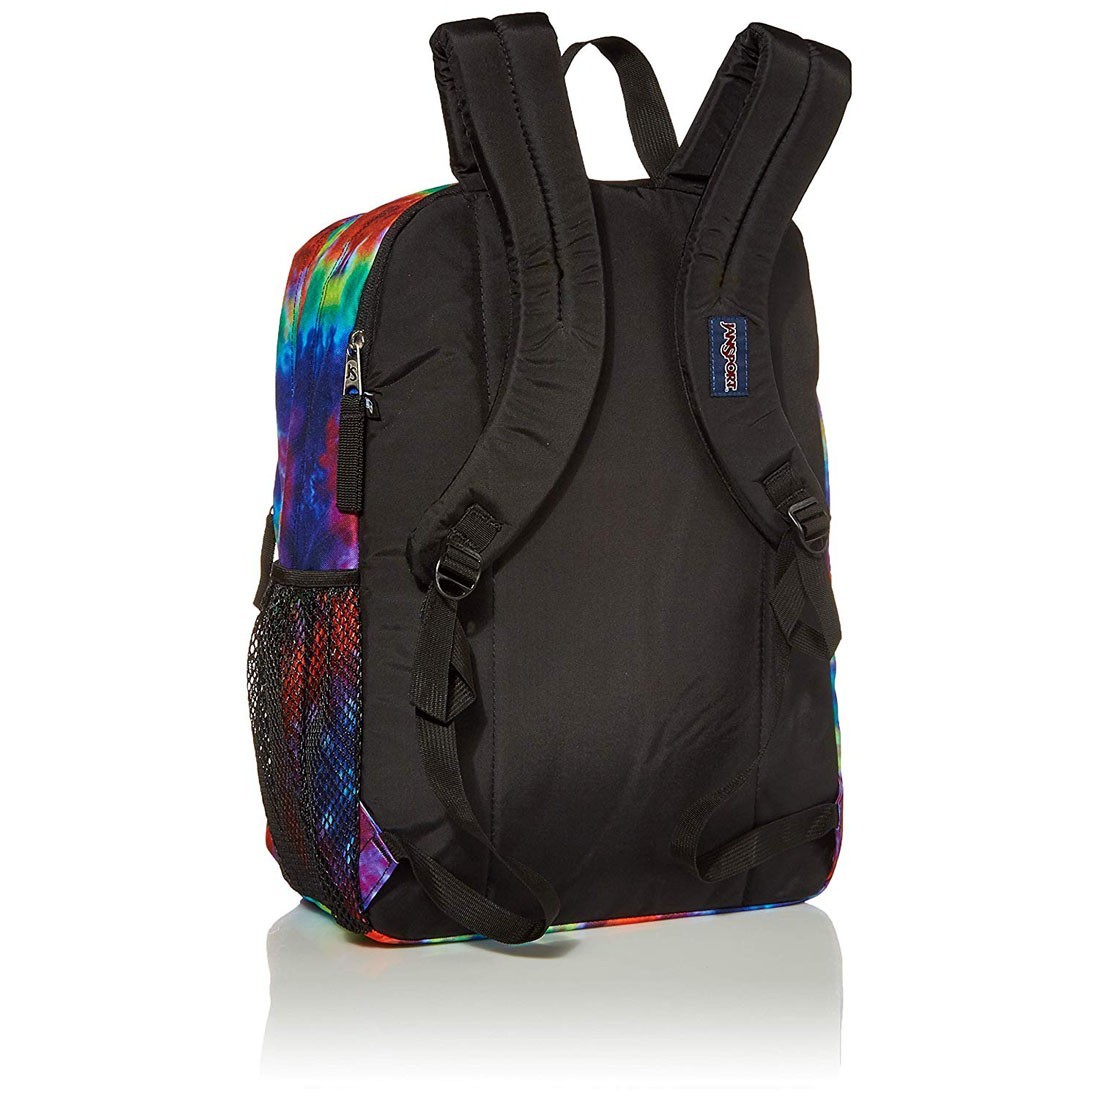 jansport hippie daze backpack